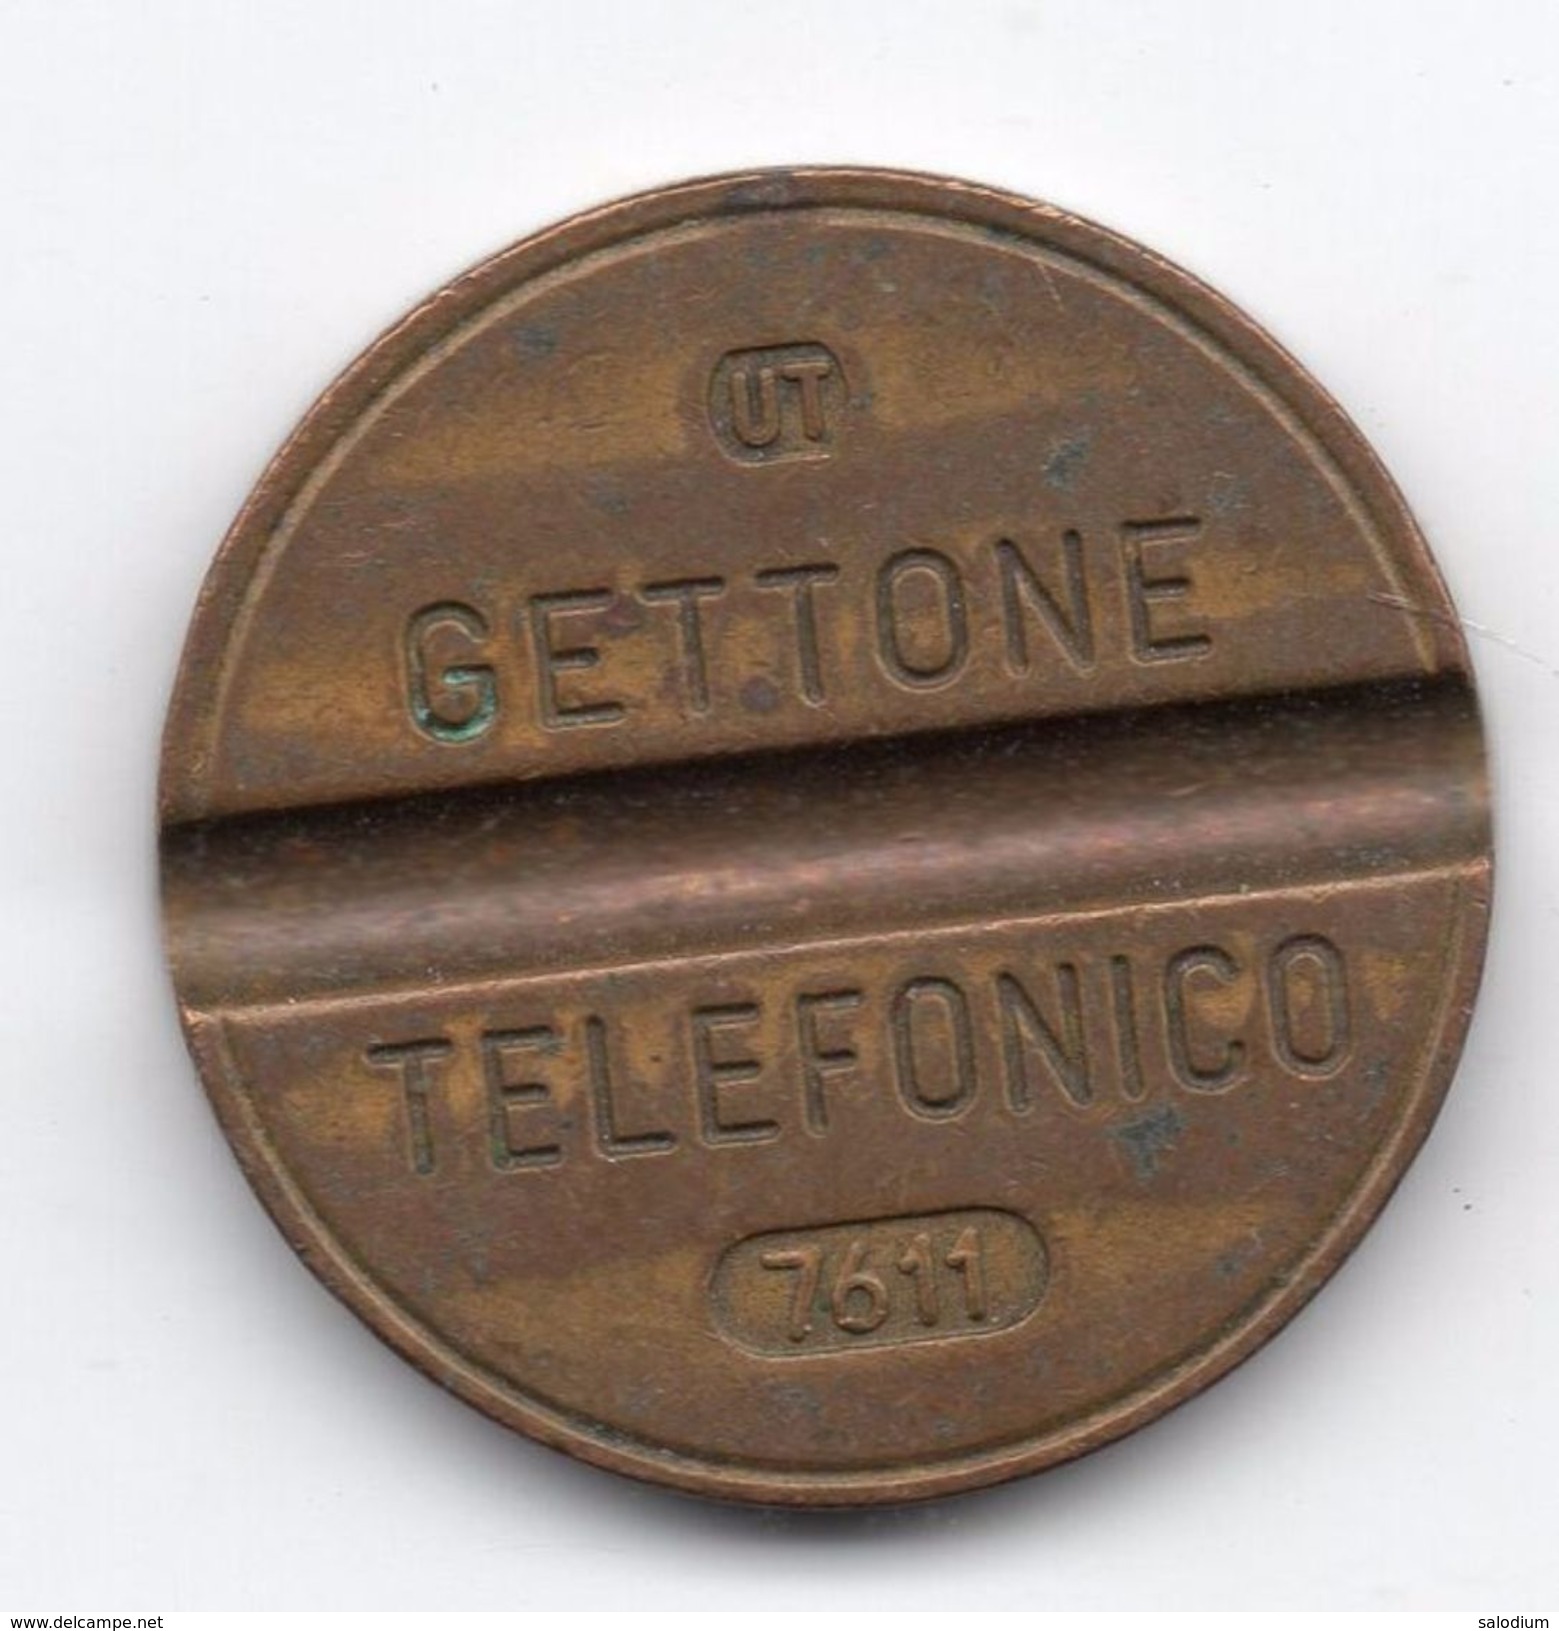 Gettone Telefonico 7611 Token Telephone - (Id-752) - Professionnels/De Société